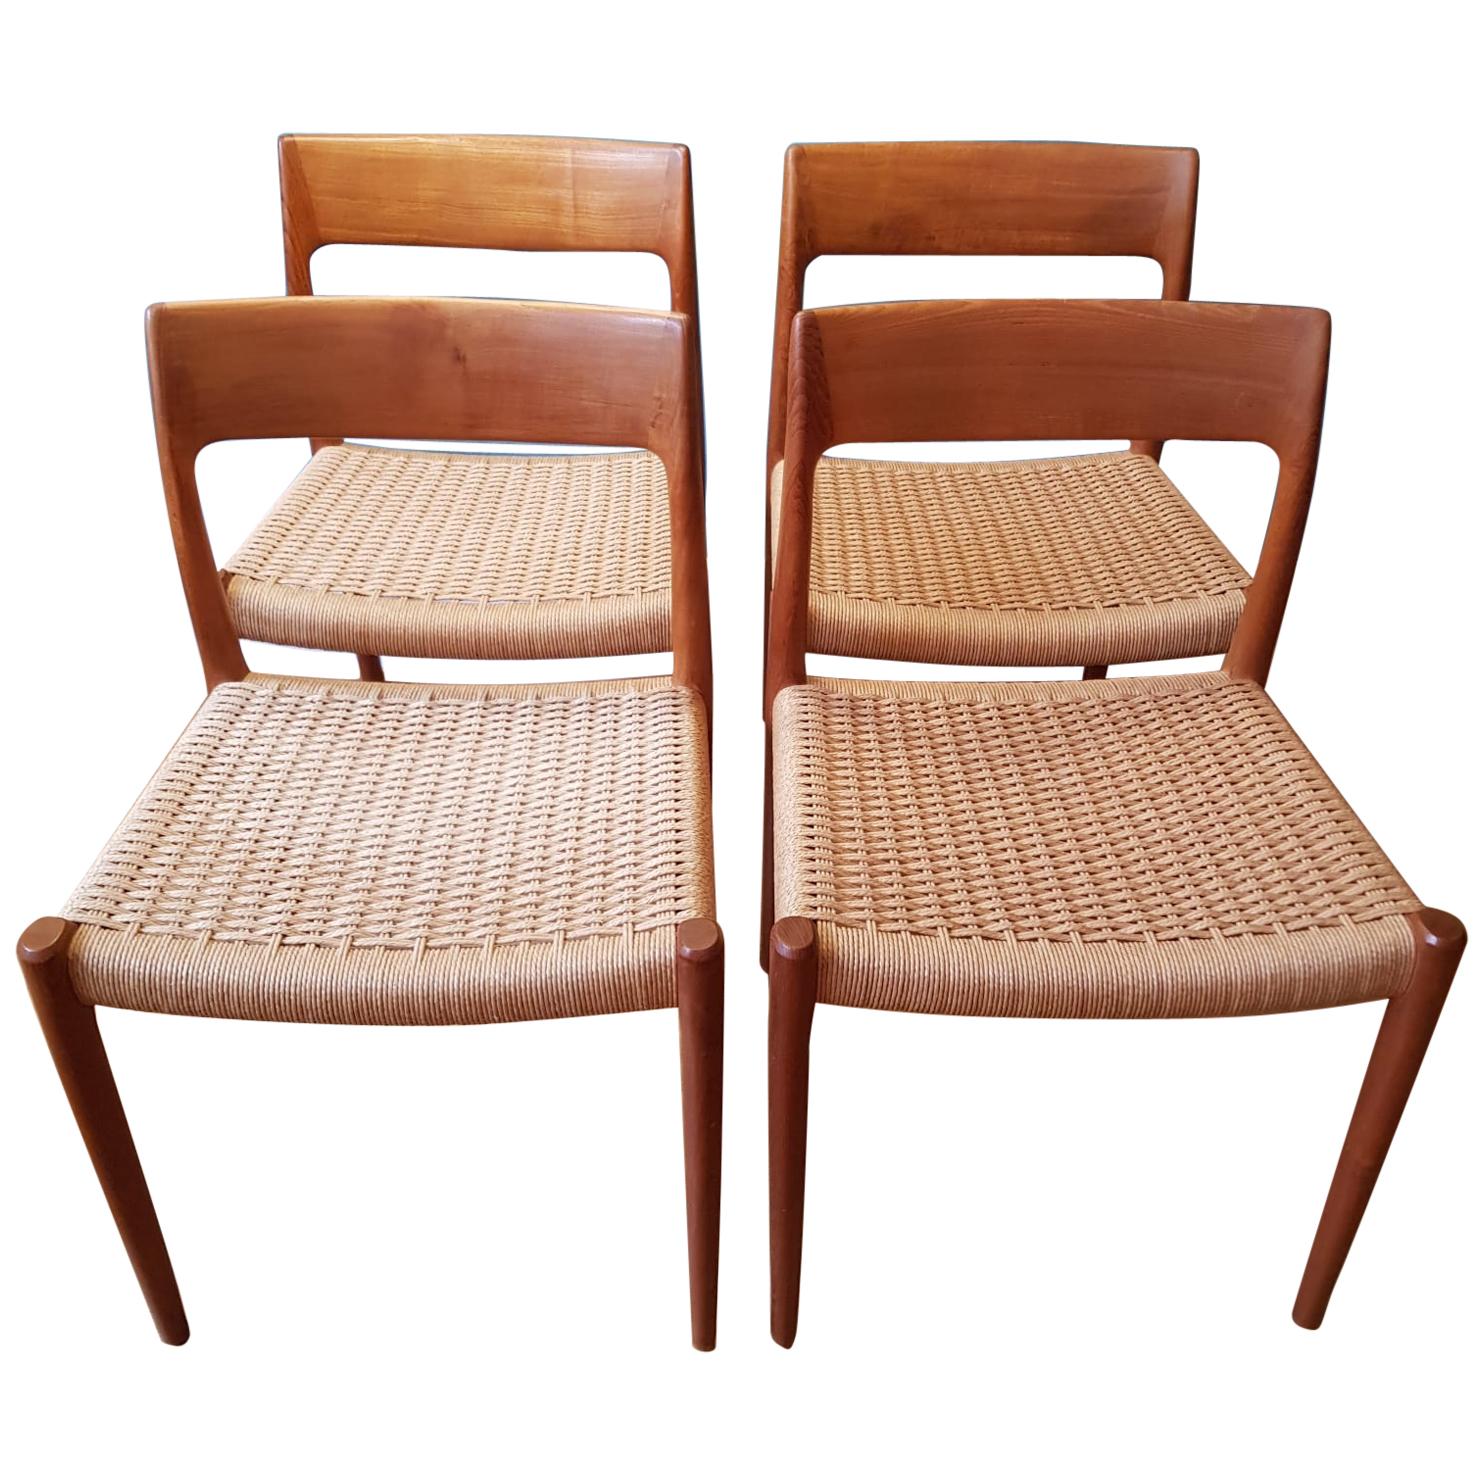 Teak Dining Chairs No. 75 from N.O. Møller for J.L. Møller, 1960 Set of 4